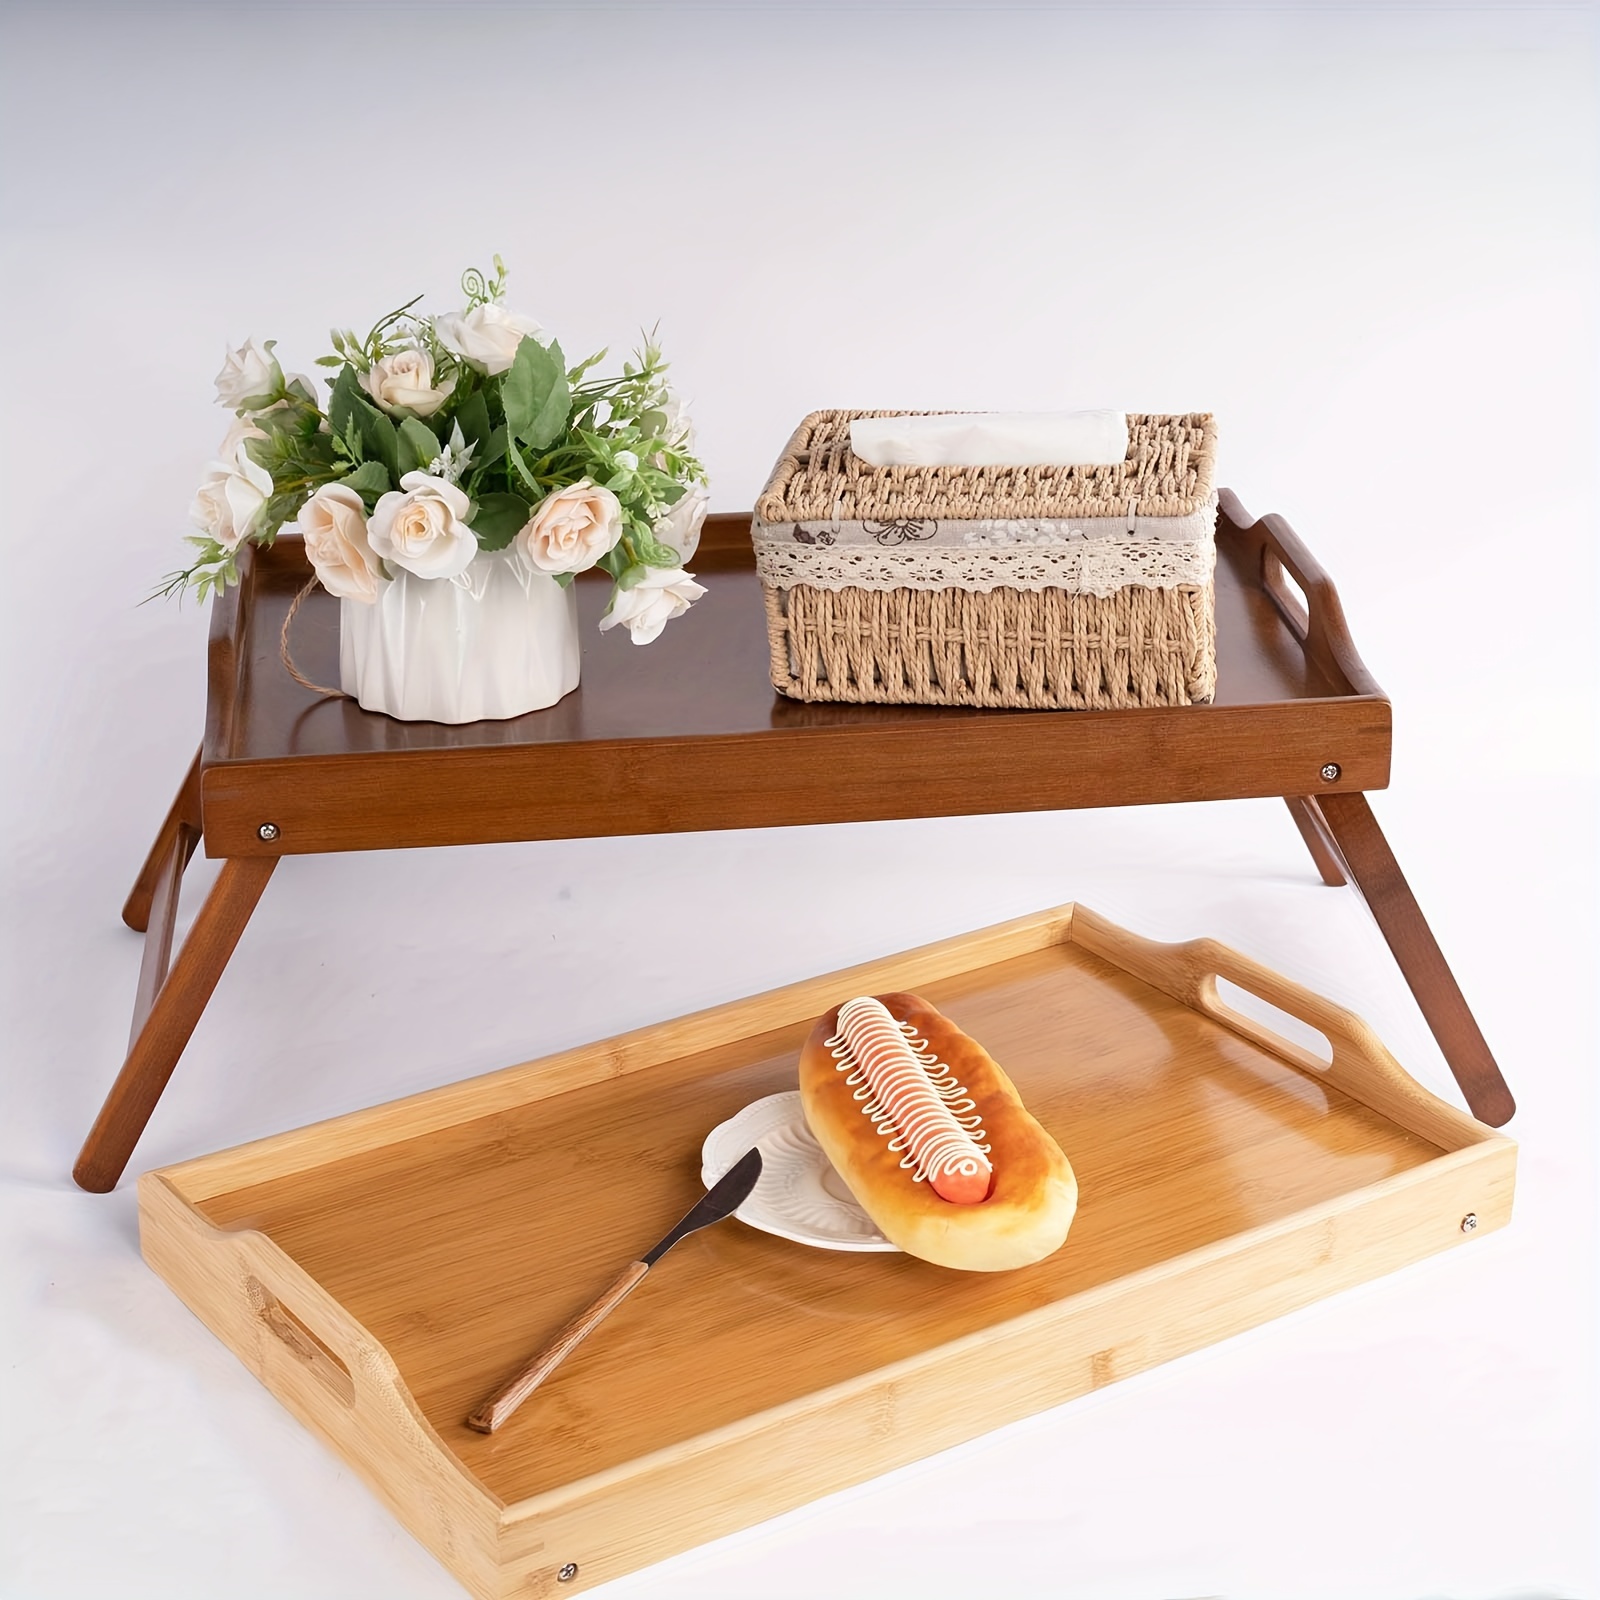  Mesa de bambú para cama – Escritorio resistente para cena y  desayuno en la cama – para comer, té, televisión, laptop, trabajo o  estudio, bandeja para servir alimentos : Hogar y Cocina